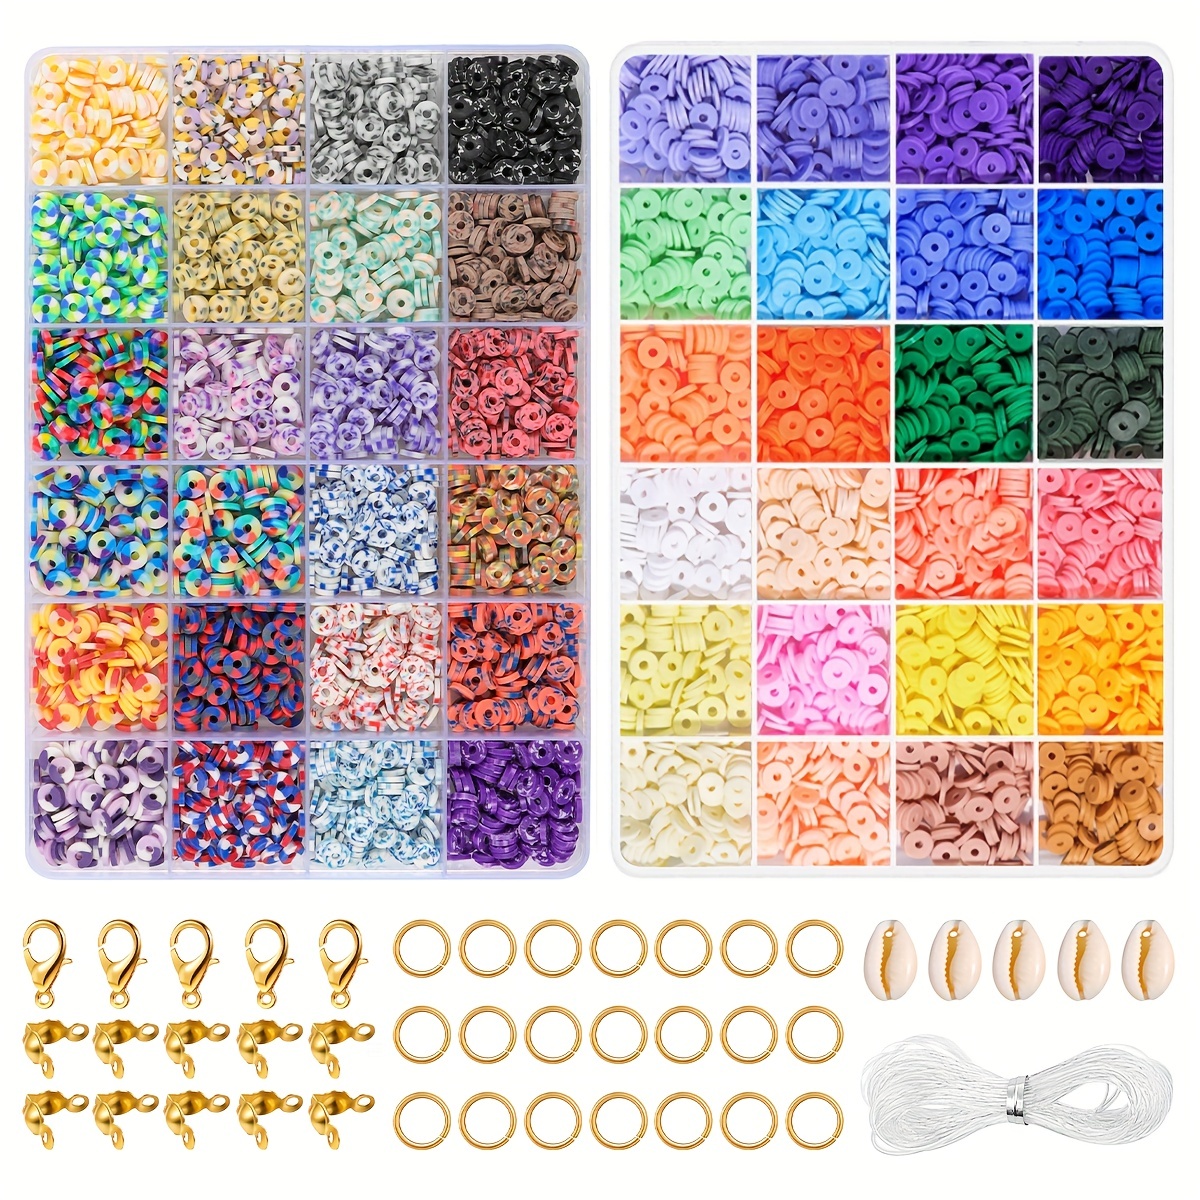 Clay Beads 4800 Pcs Bracelet Making Kit - 20 Colors Polymer Clay Beads for Bracelet Making - Jewelry Making Kit with Bracelet Making Kit for